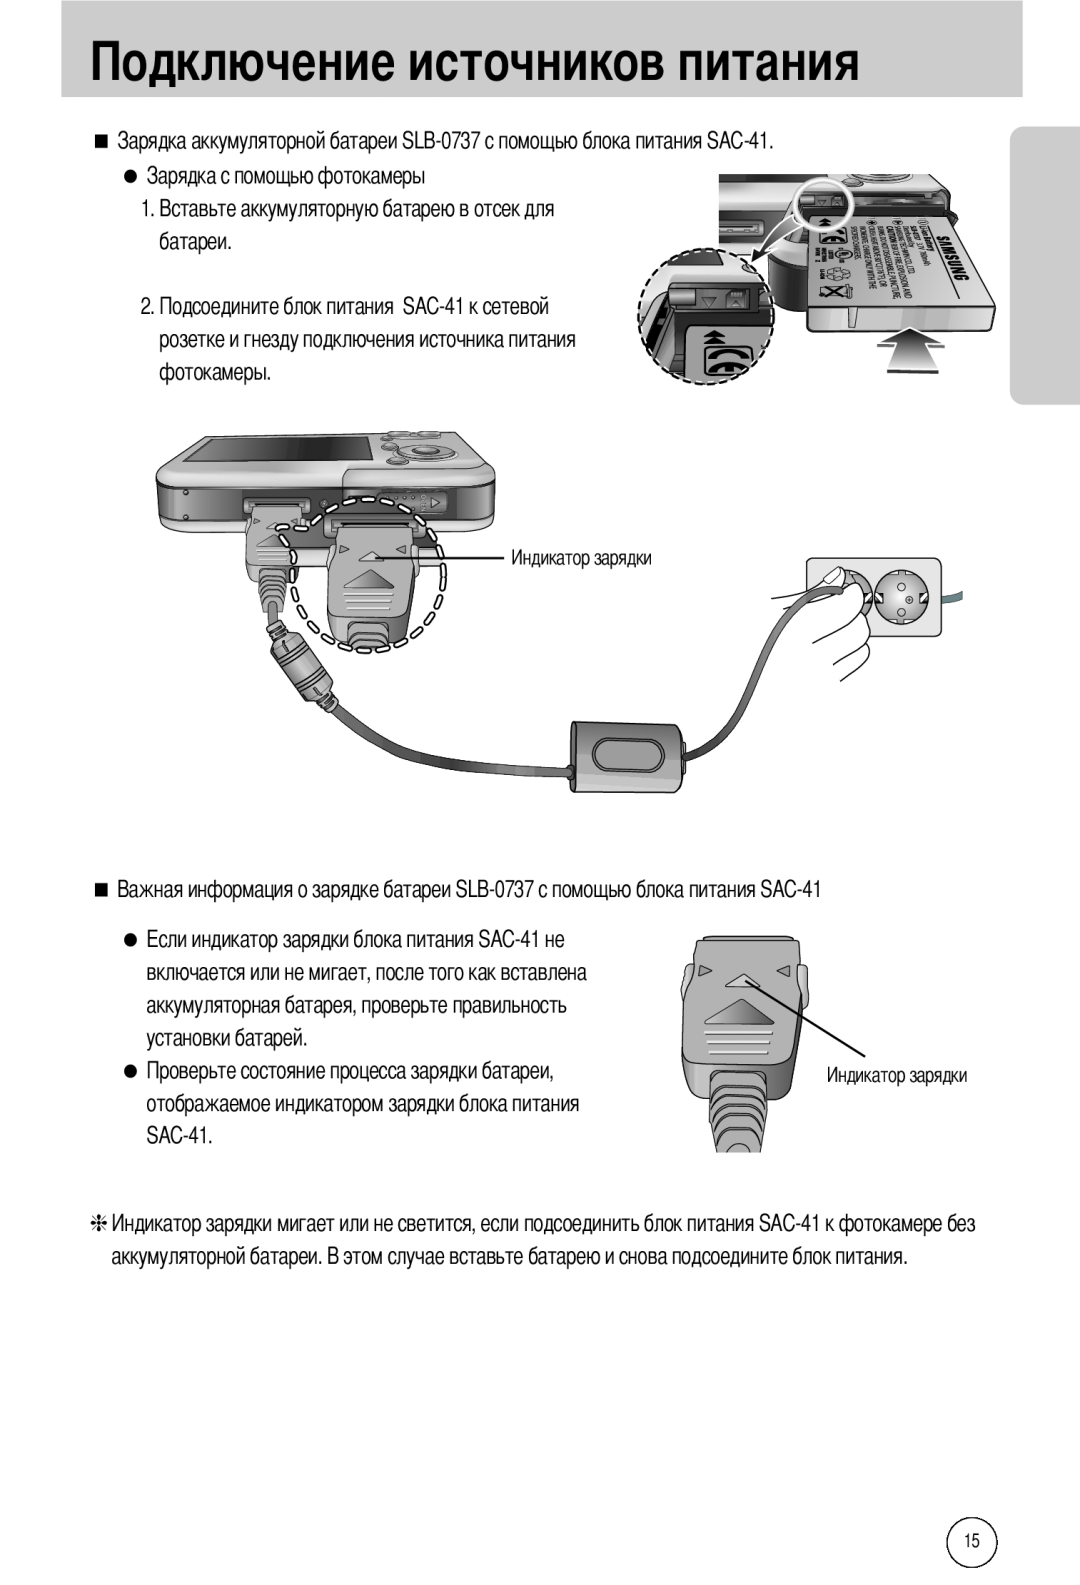 Samsung EC-I50ZZRBA/FR manual розетке и гнезду подключения источника питания фотокамеры, аккумуляторной батареи 